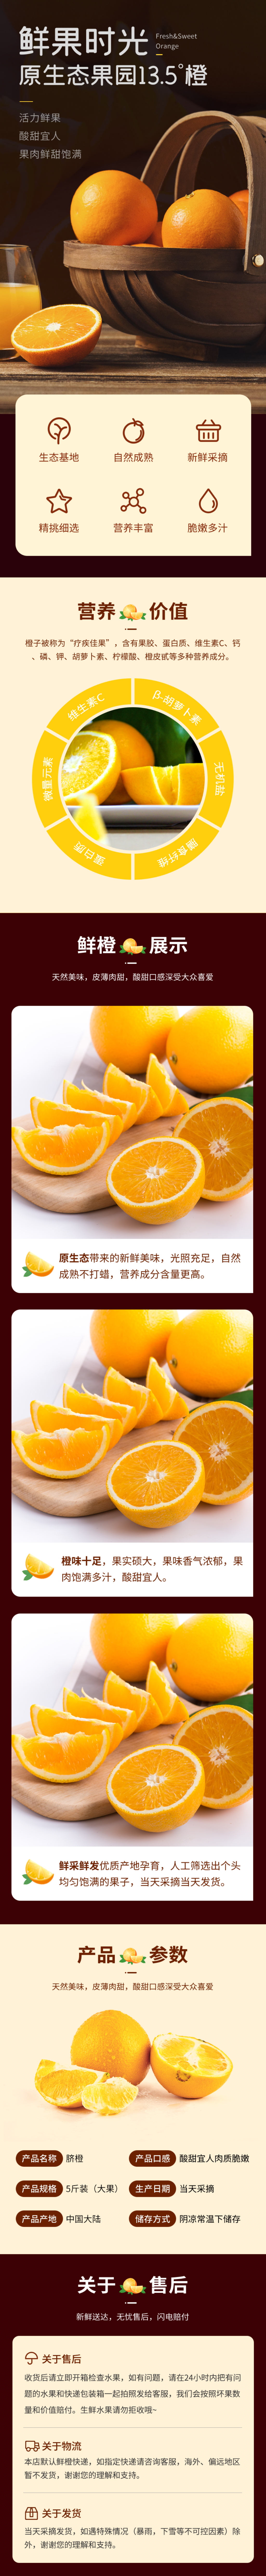 淘宝天猫水果详情页通用橙子